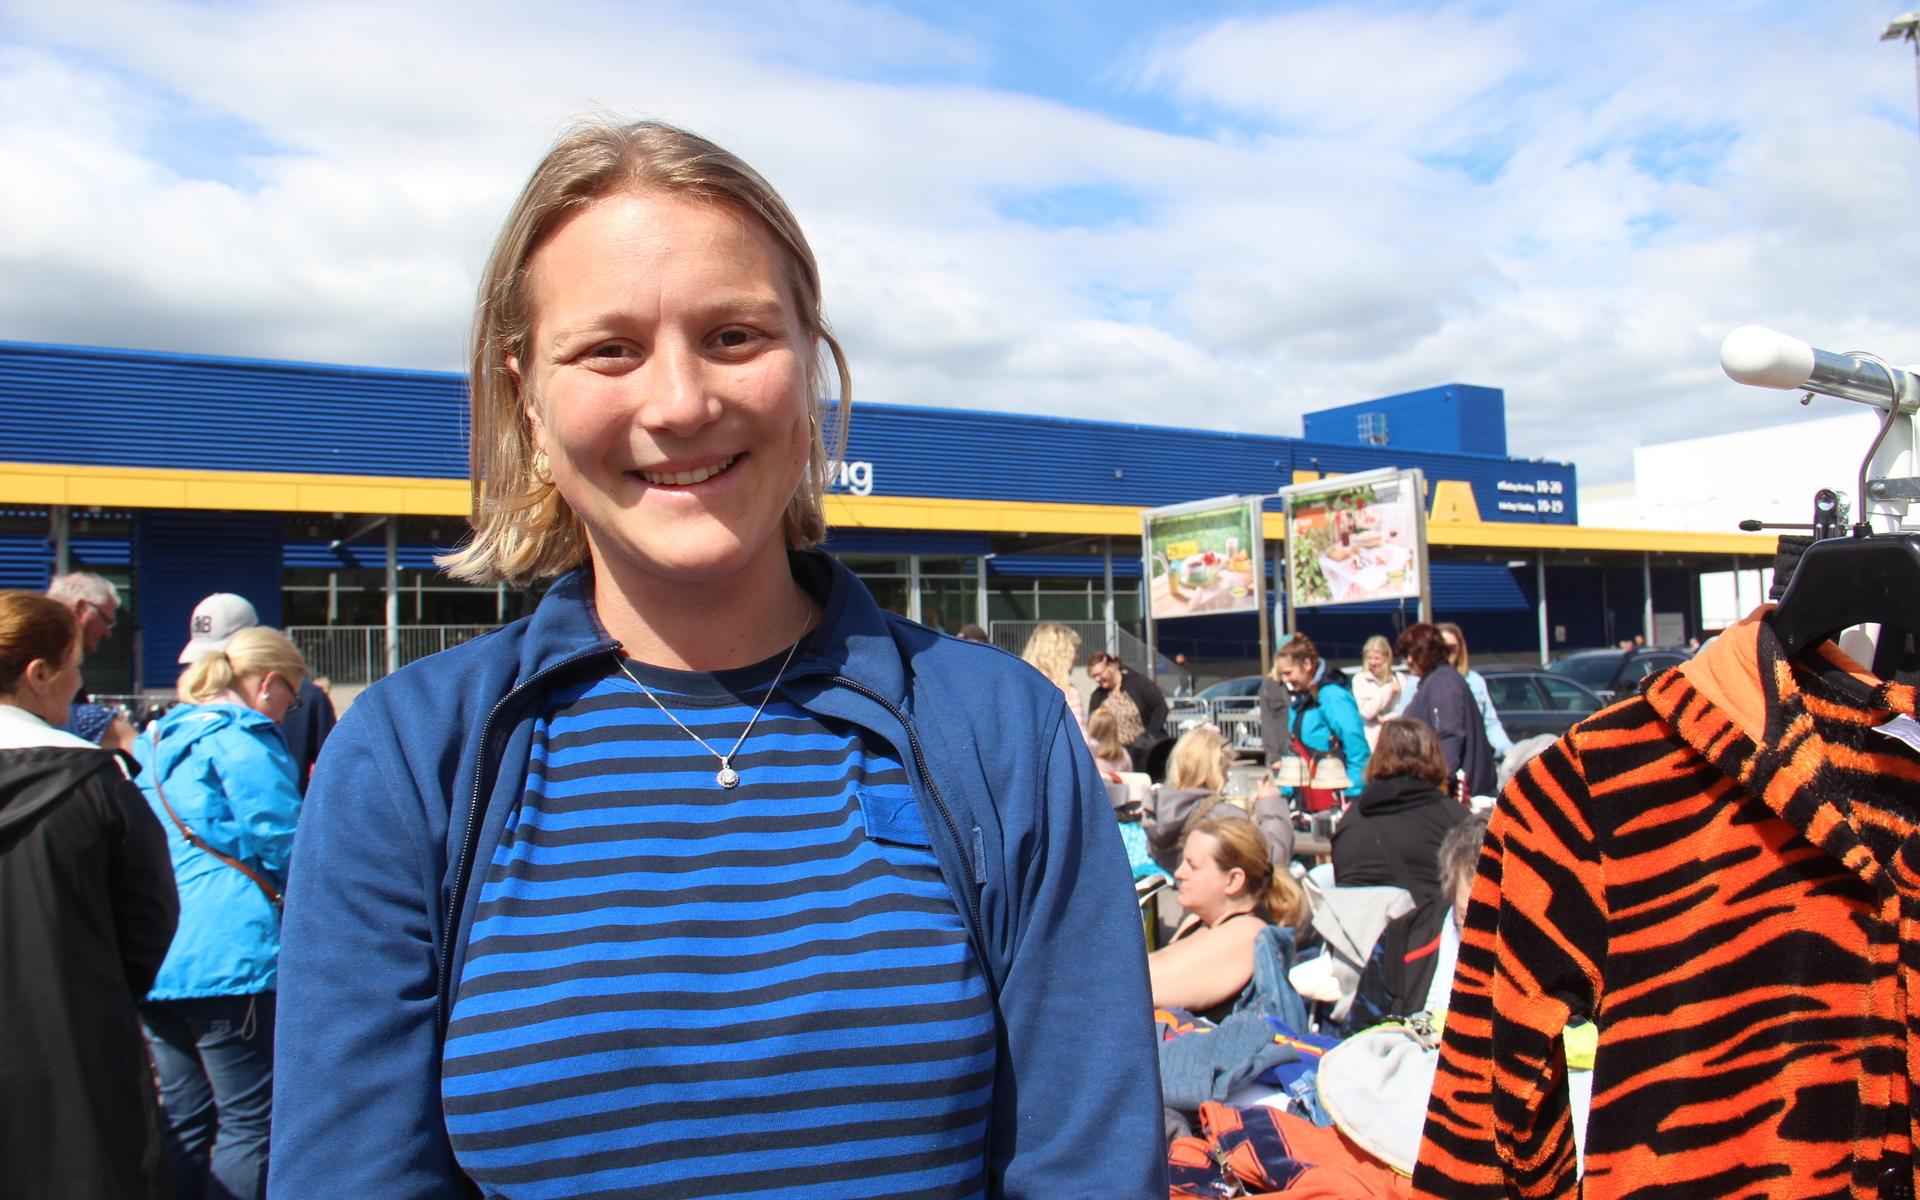 Ikea-anställda Emma Magnusson håller uppsikt över marknaden och ser till så att alla försäljare får sina matkuponger till Ikeas restaurang. ”Att vi fick sol är ju underbart”, säger hon. 